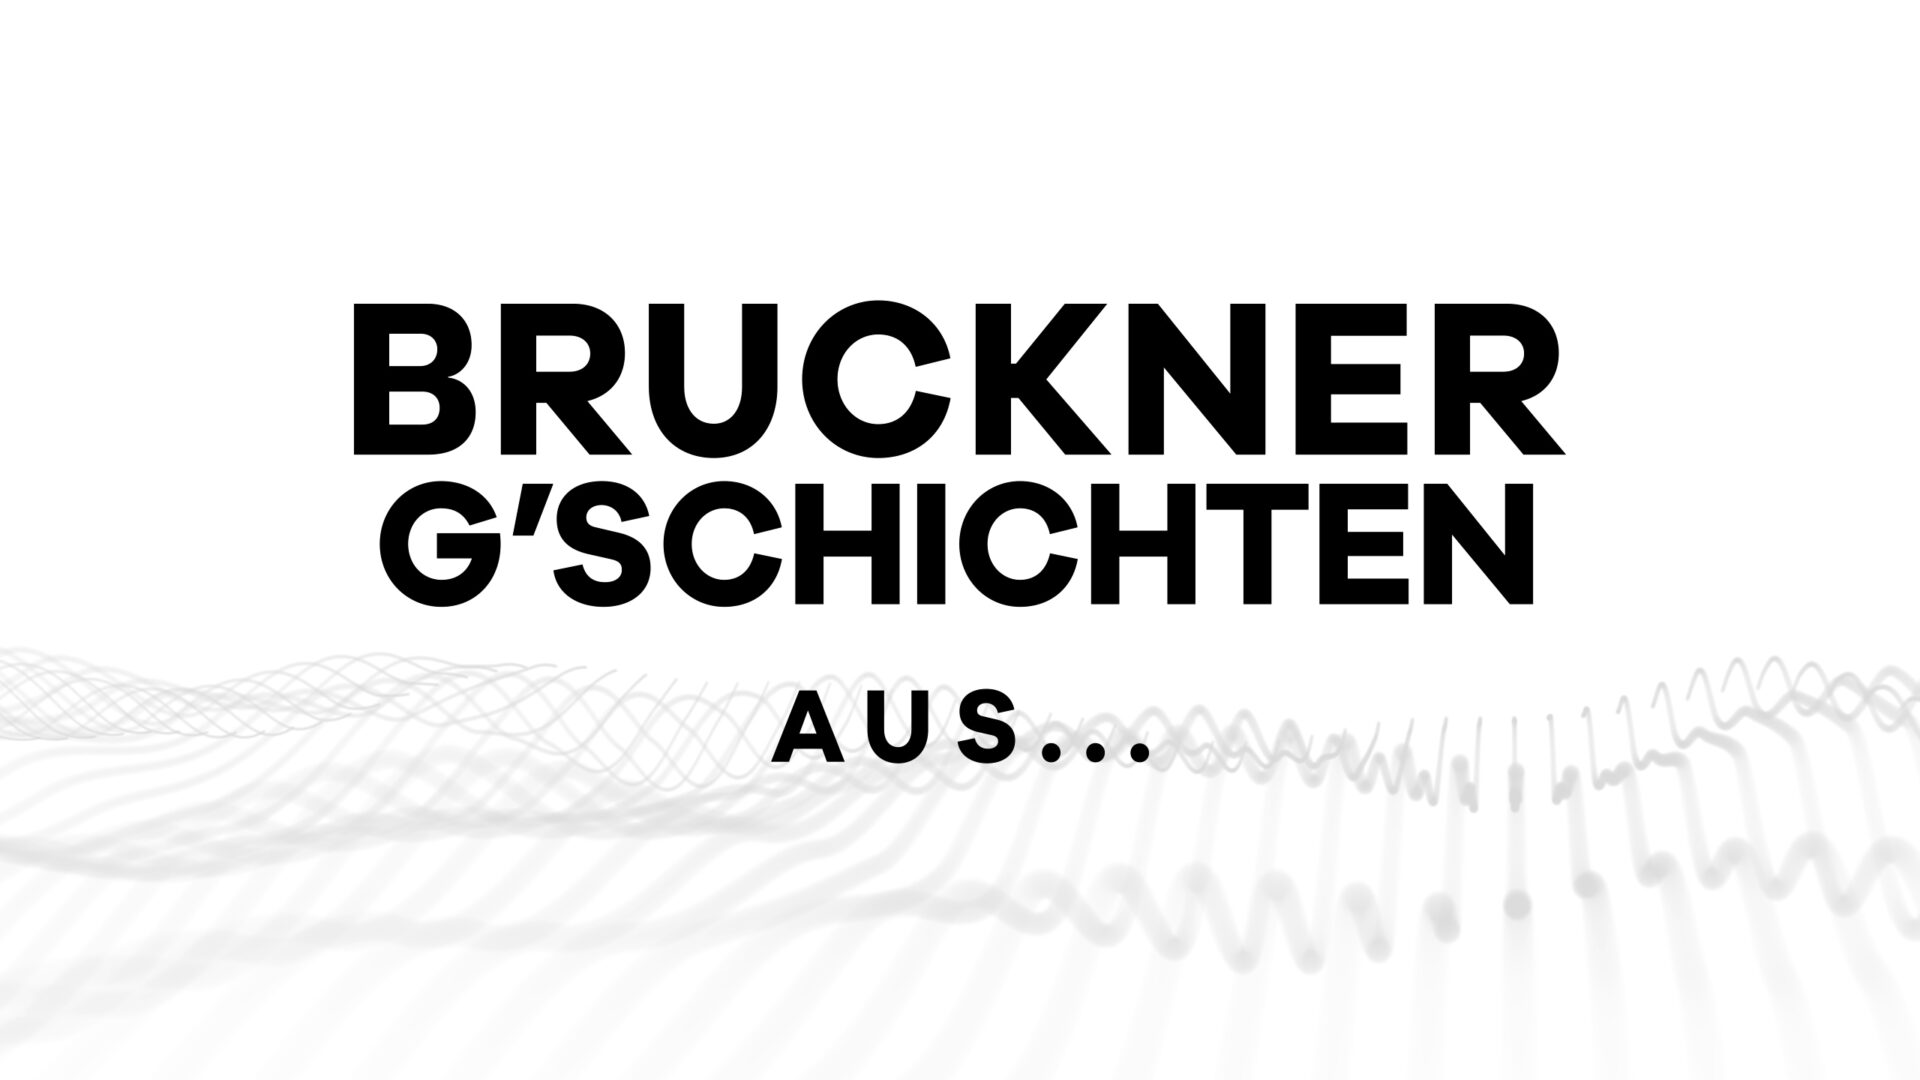 Serie „Bruckner-G’schichten“